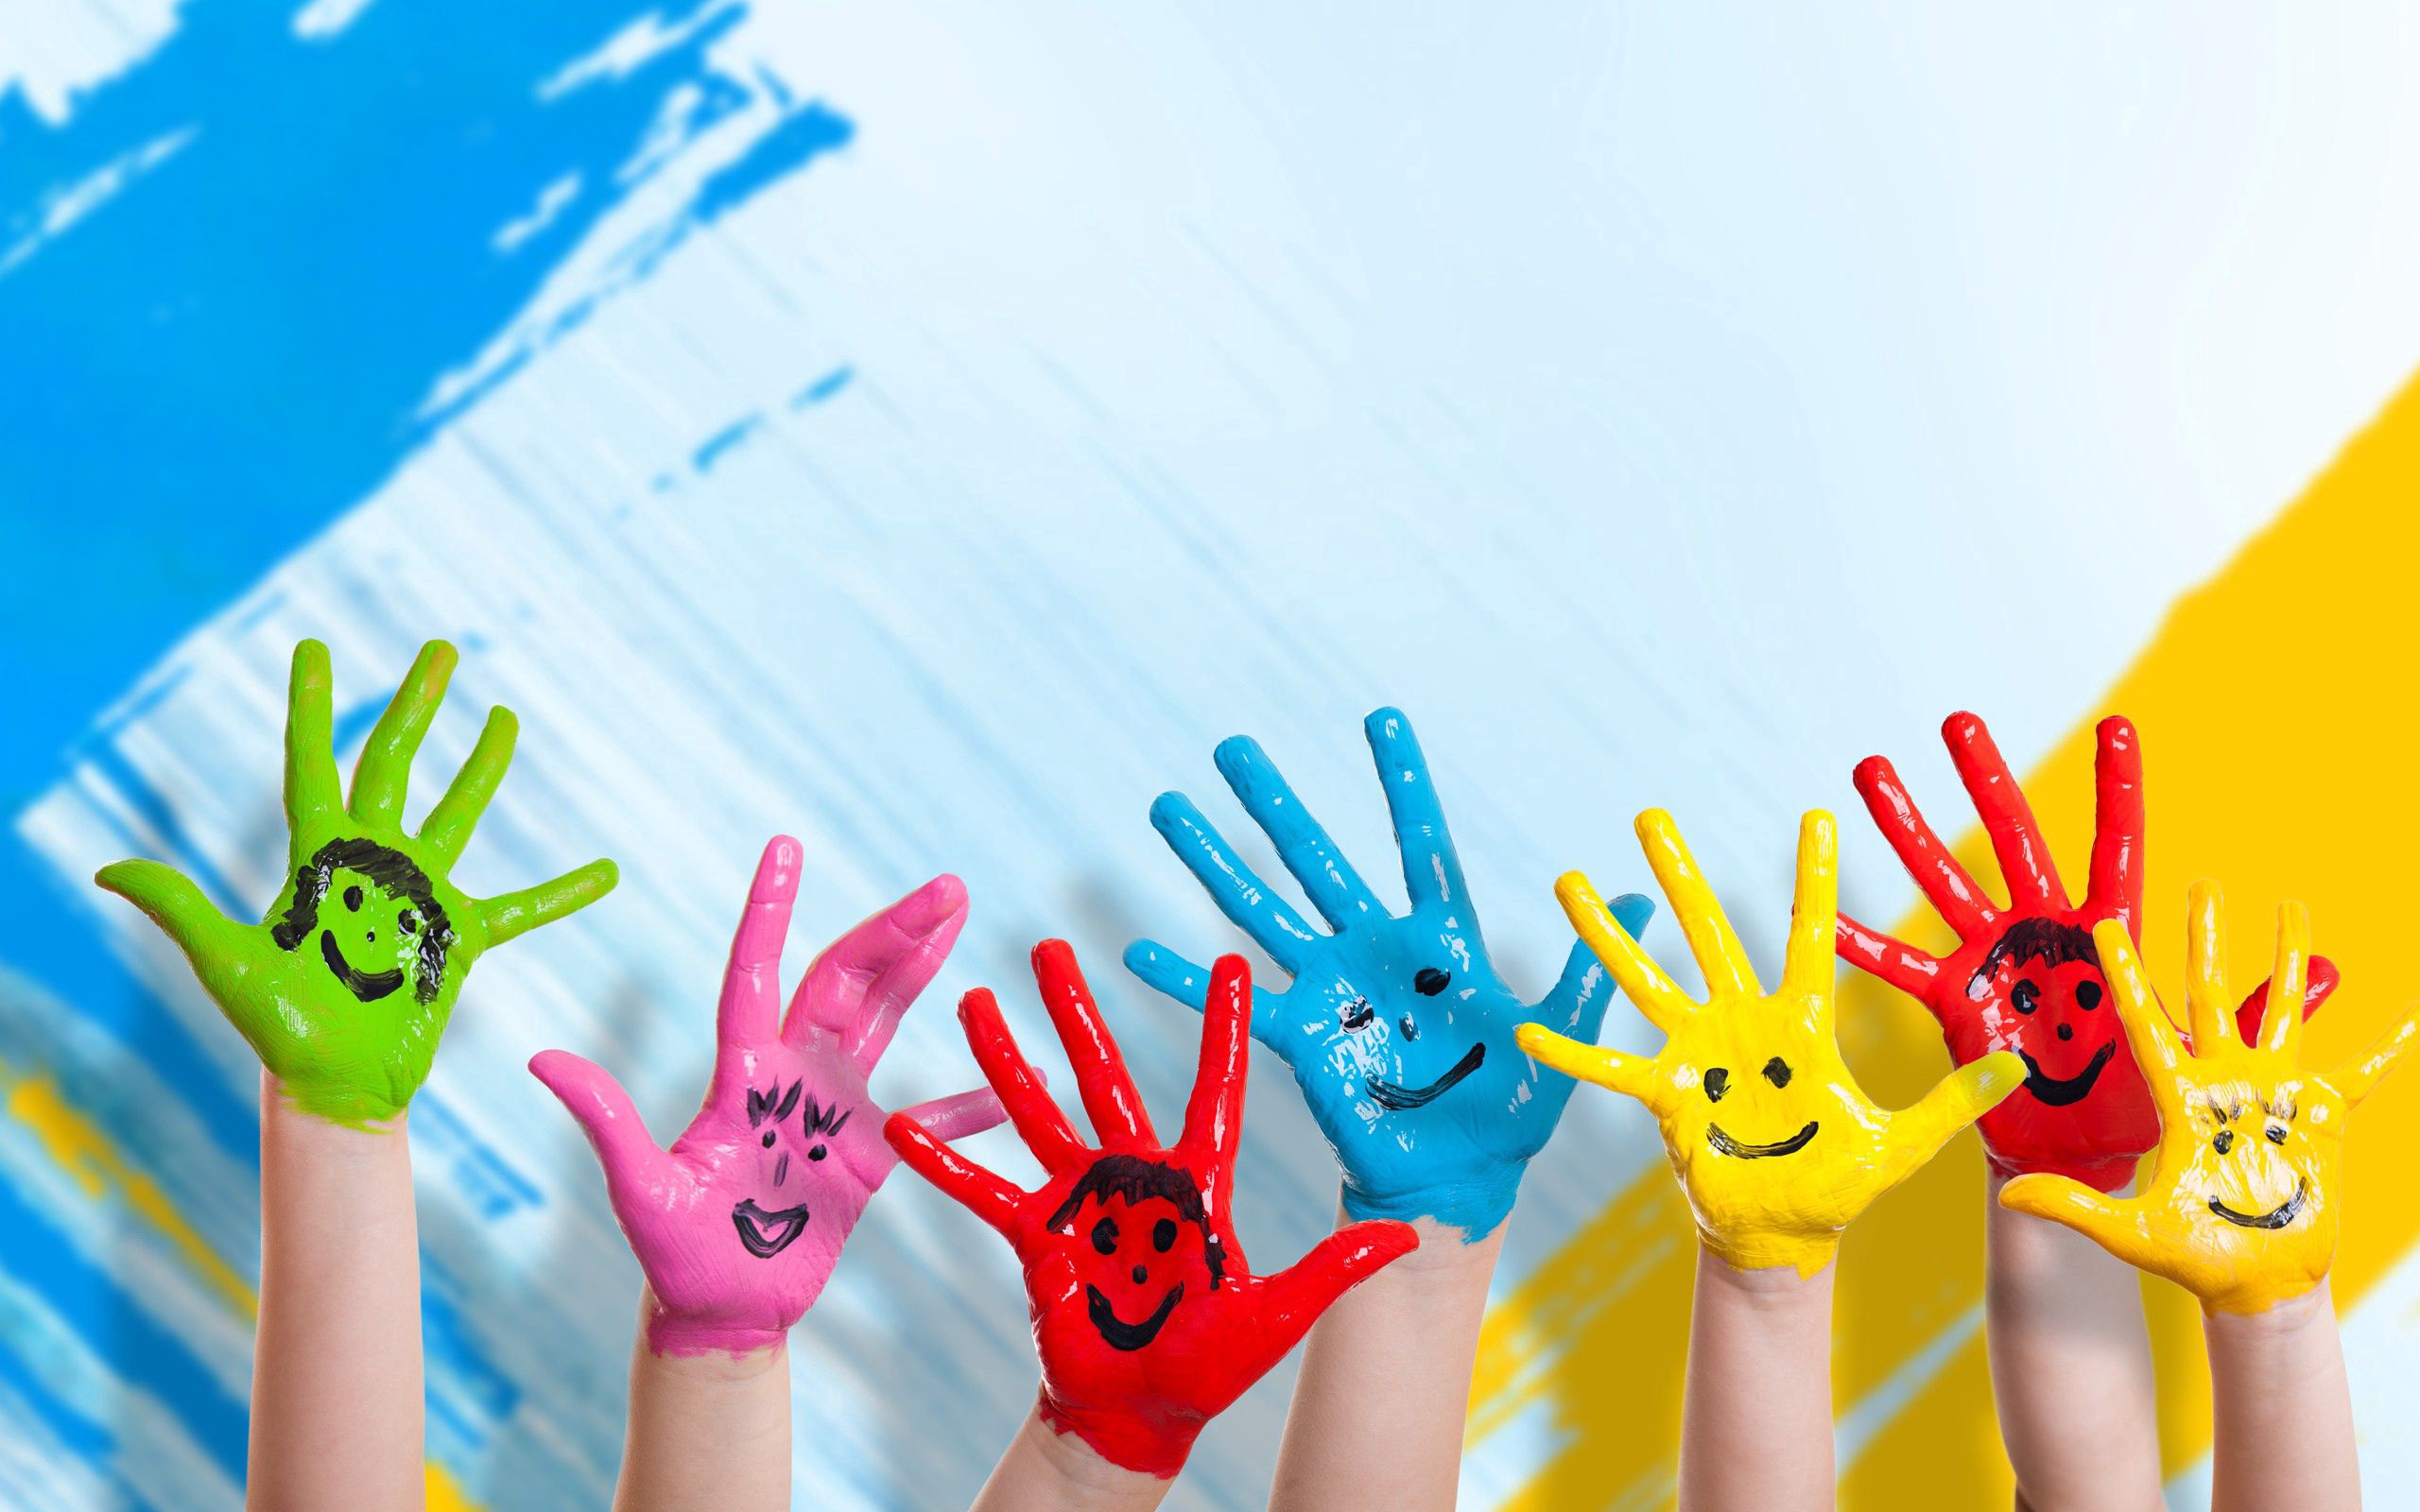 children, positive, happiness, paint, smiles, hands, smile, miscellanea, miscellaneous